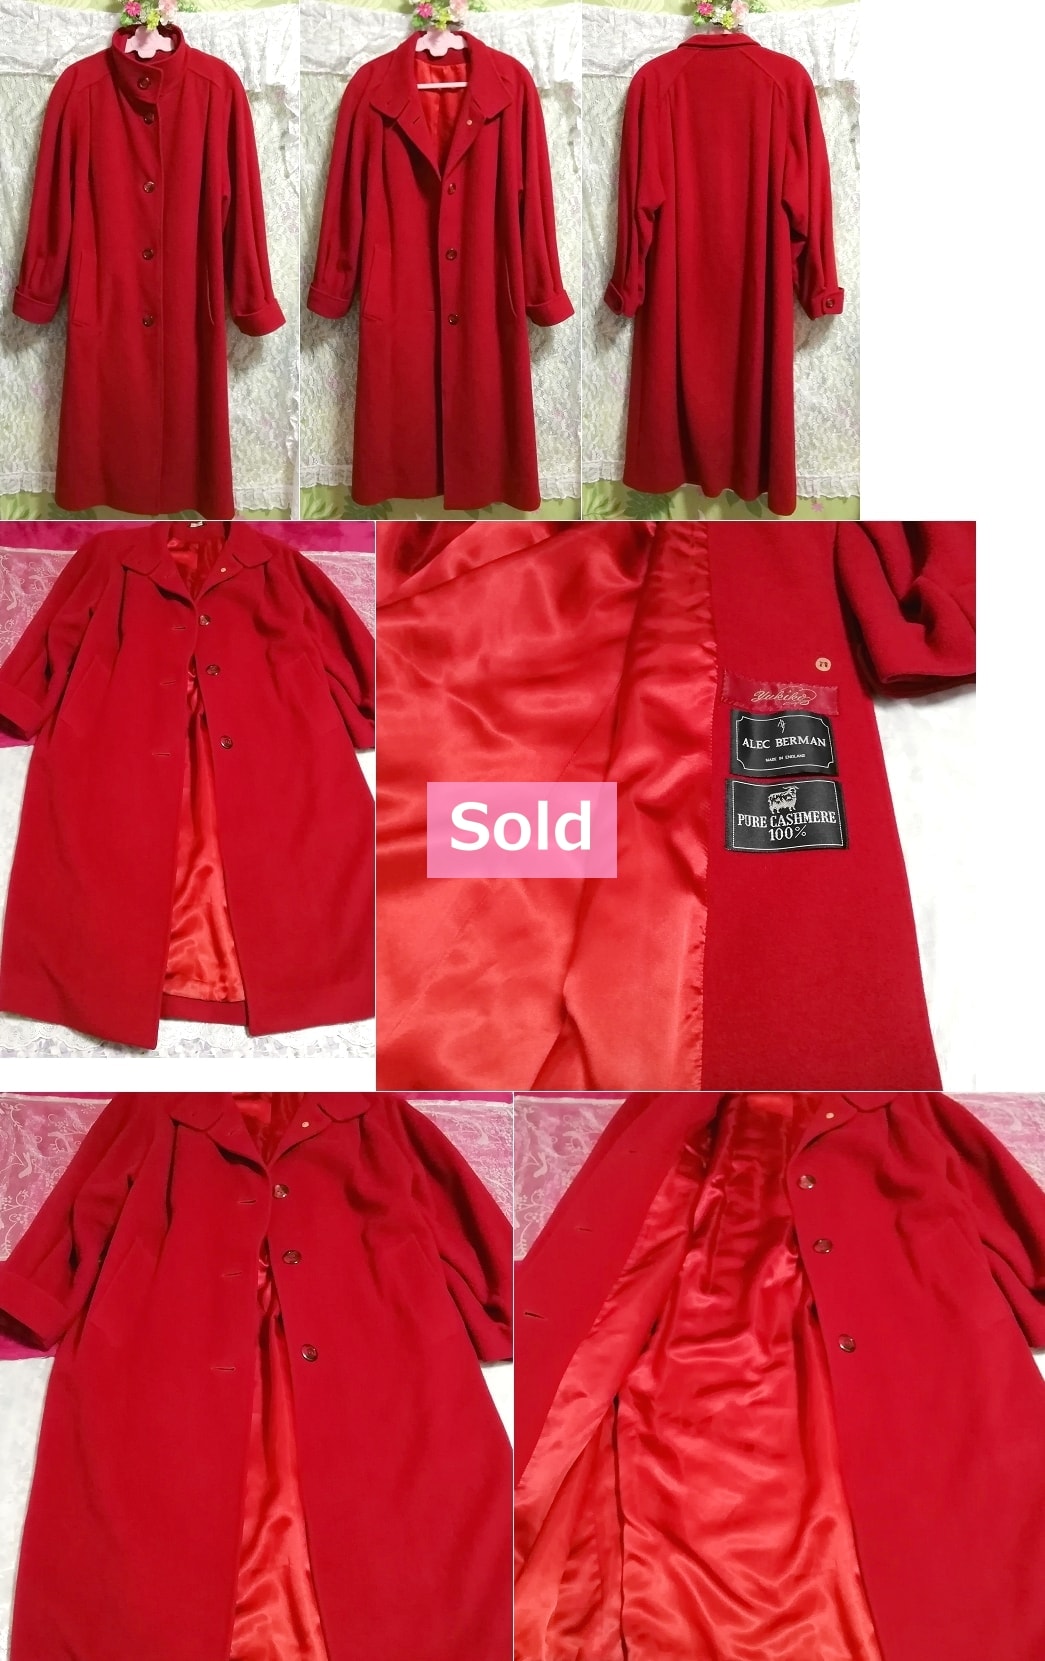 ALEC BERMAN 100% Kaschmir hergestellt in England UK England Kaschmir 100% wunderschöner roter langer Mantel